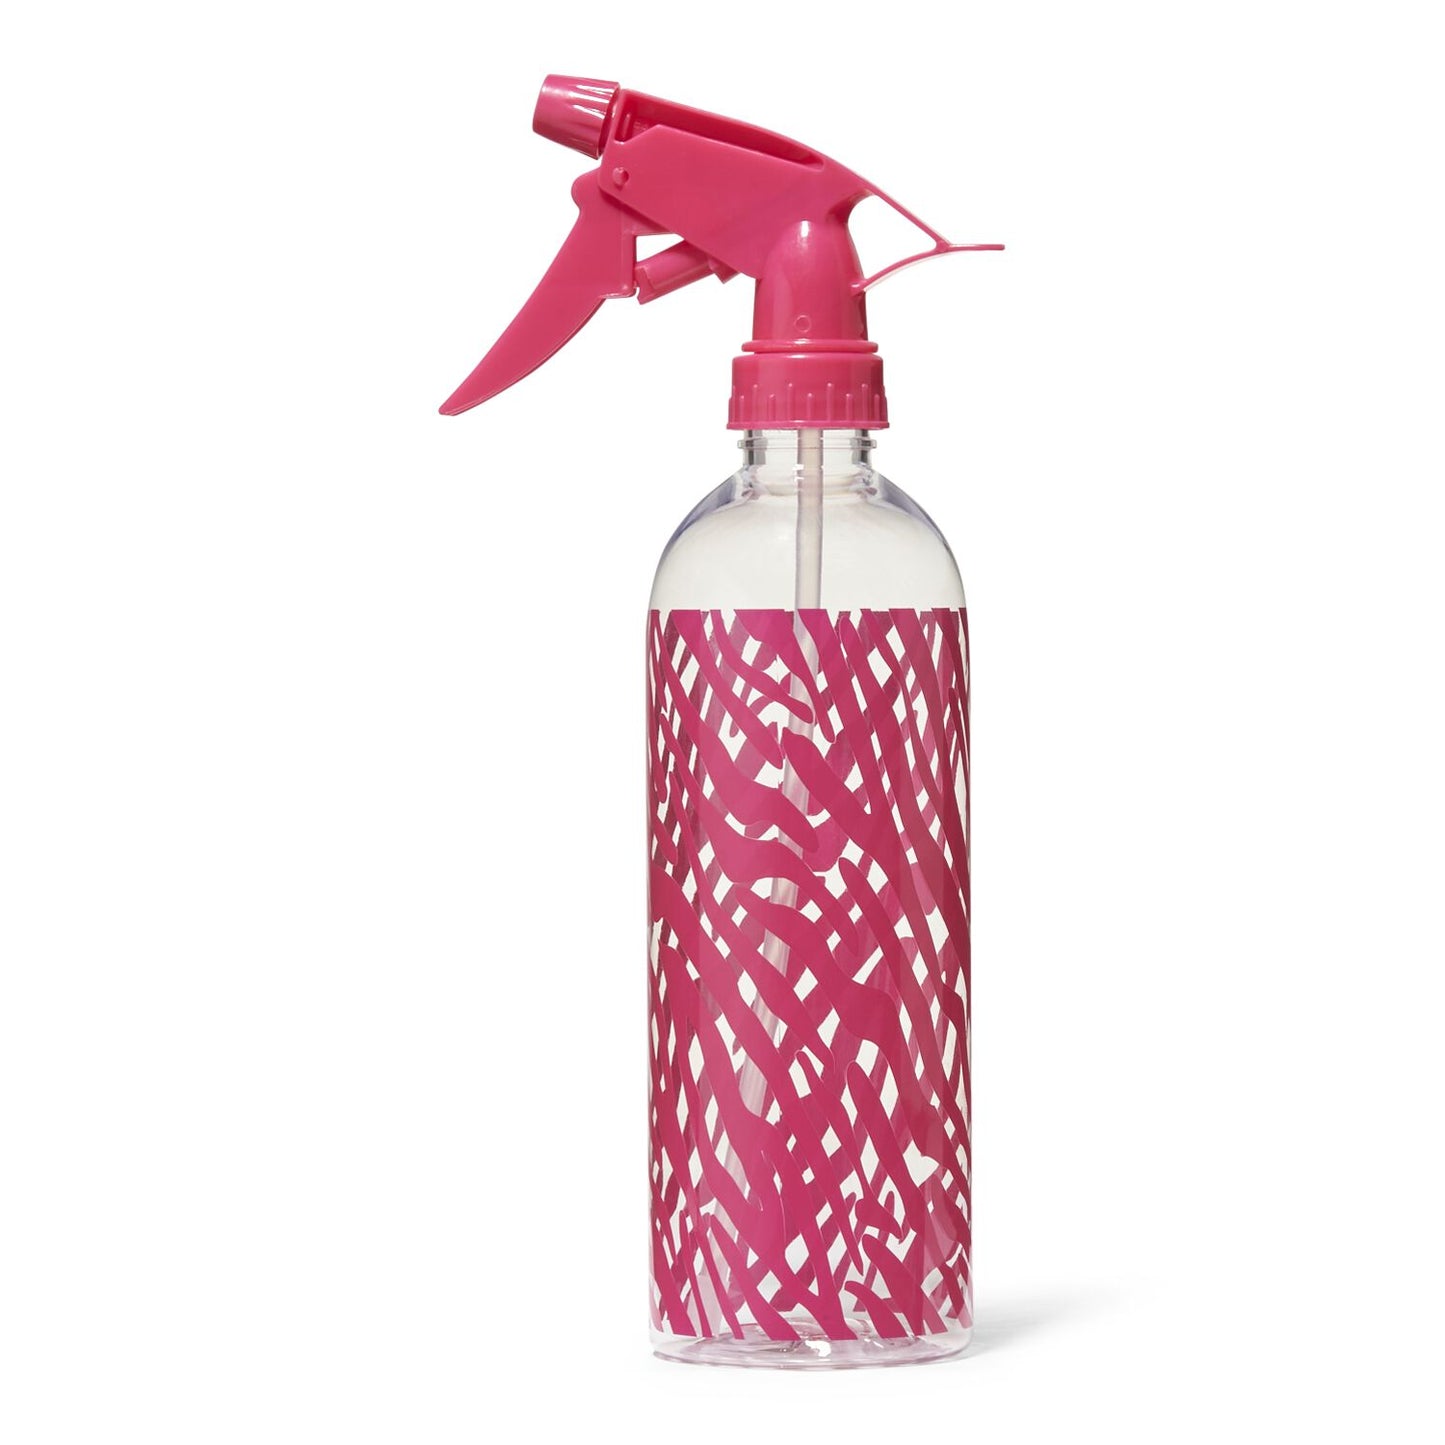 Salon Care Zebra Spray Bottle